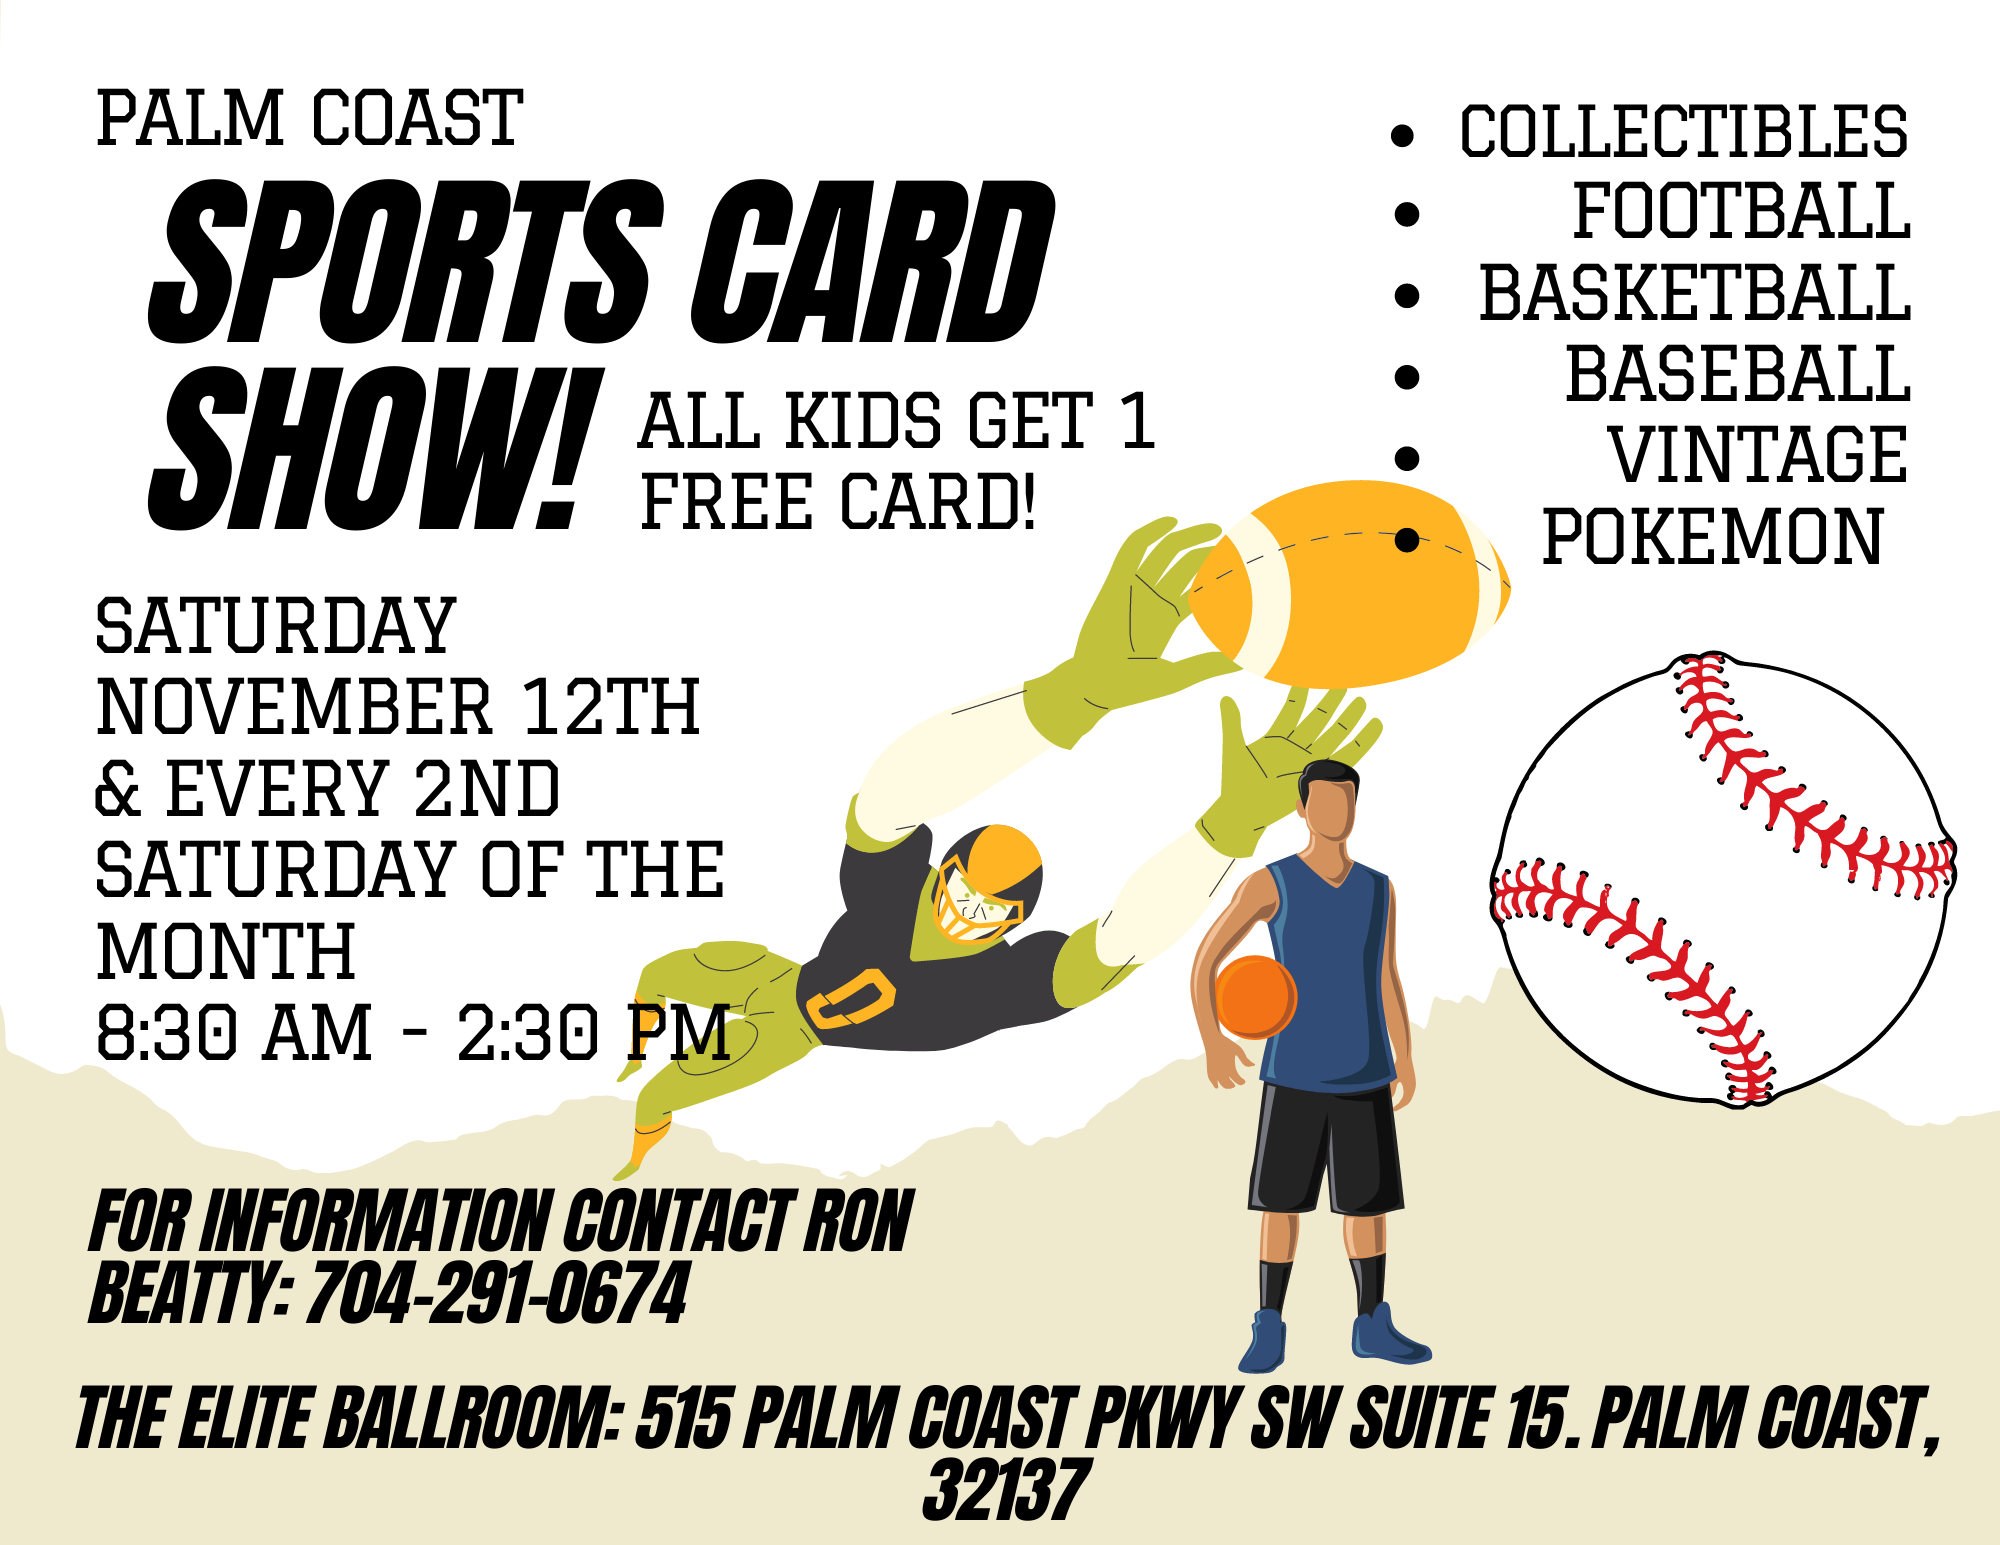 Palm Coast Sports Card Show